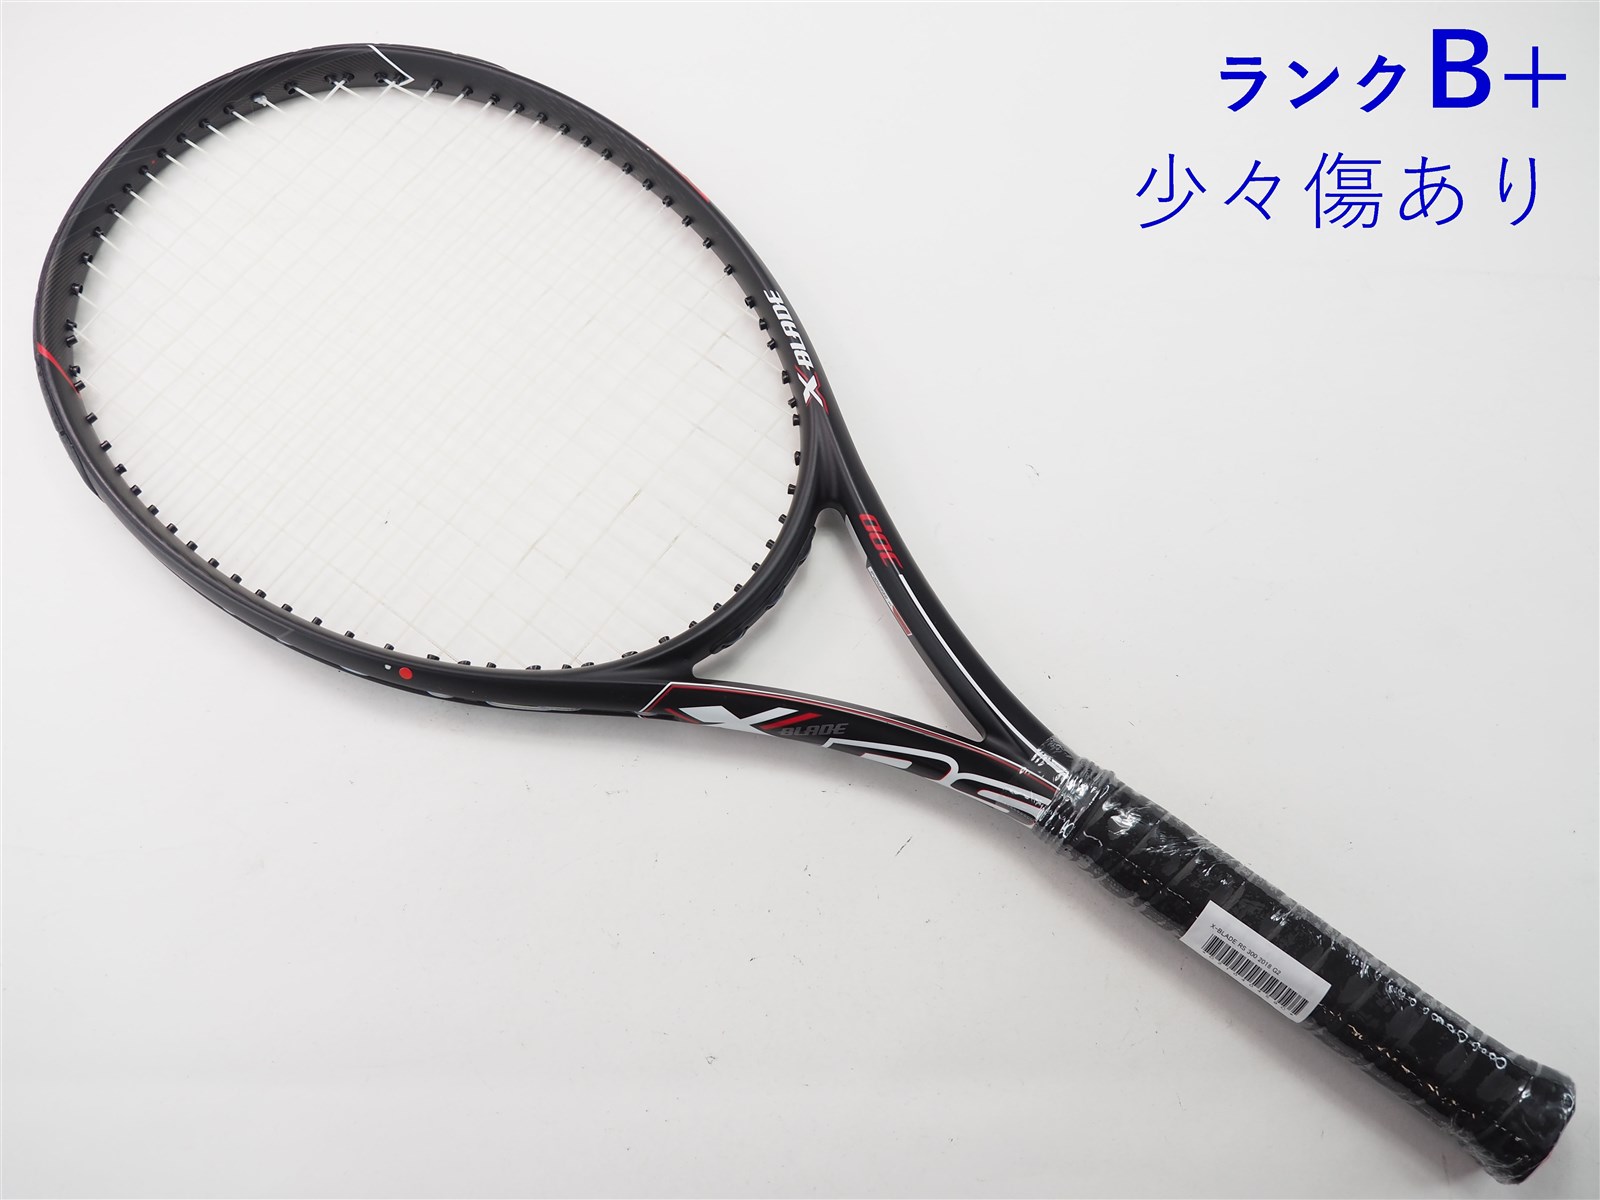 テニスラケット ブリヂストン エックスブレード アールエス 300 2018年モデル (G2)BRIDGESTONE X-BLADE RS 300 2018